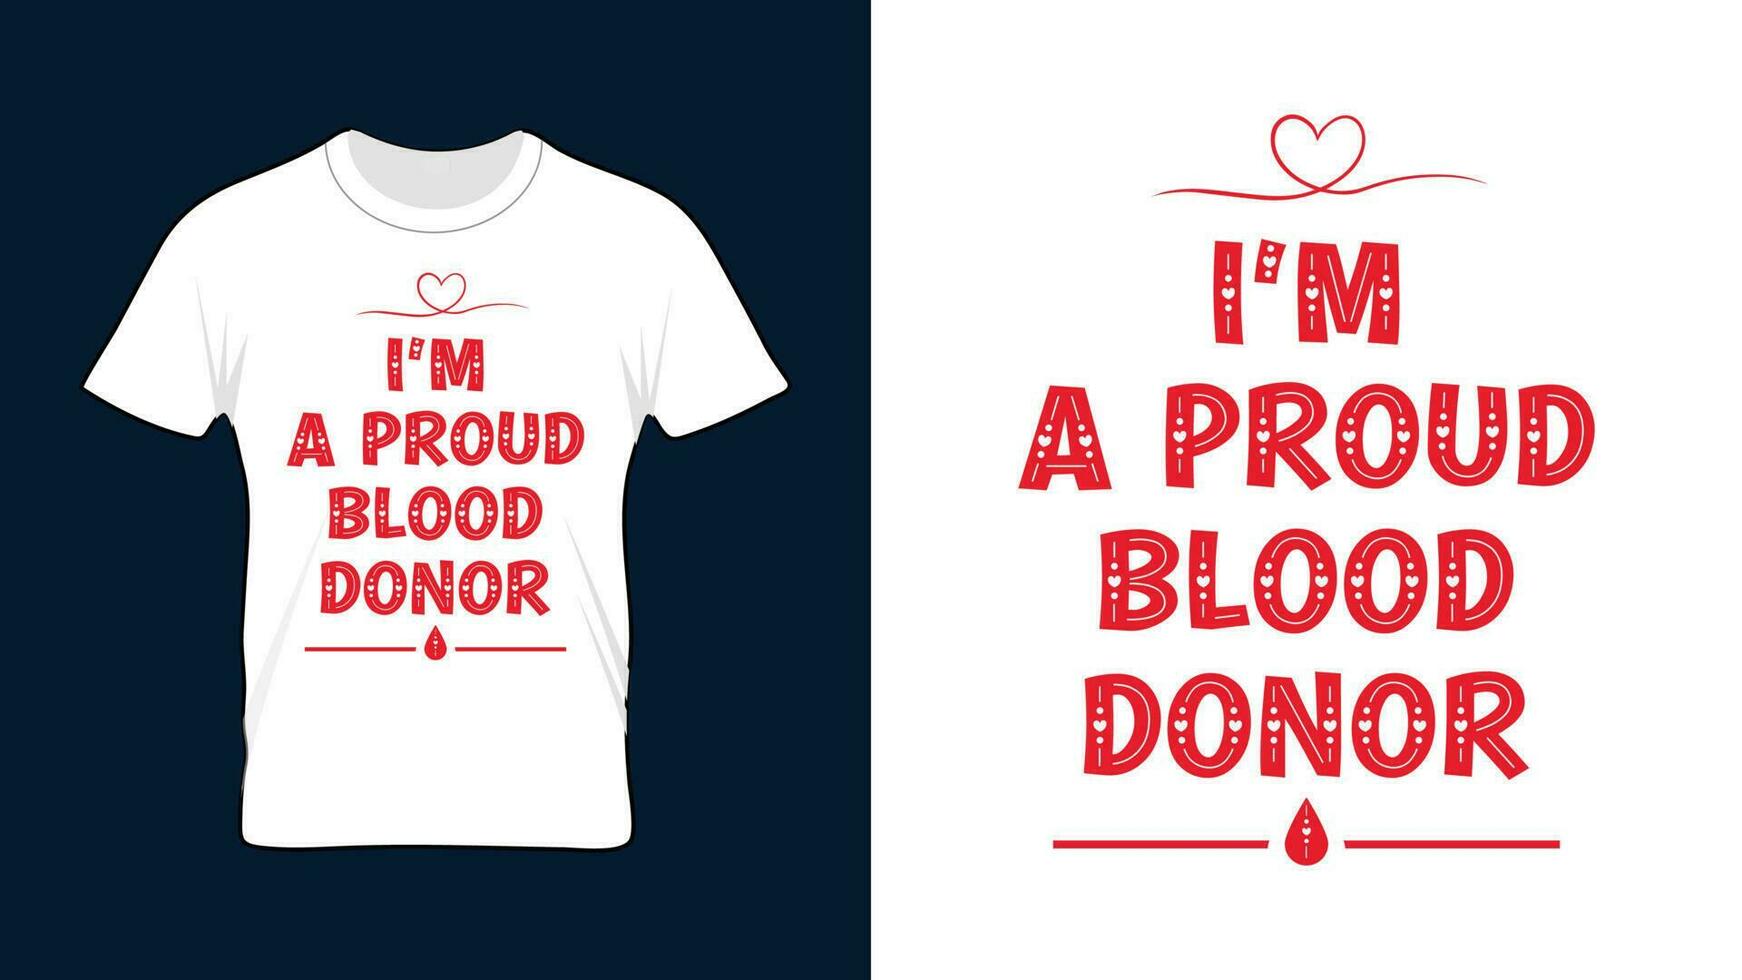 Eu sou uma orgulhoso sangue doador - mundo sangue doador dia camiseta Projeto vetor